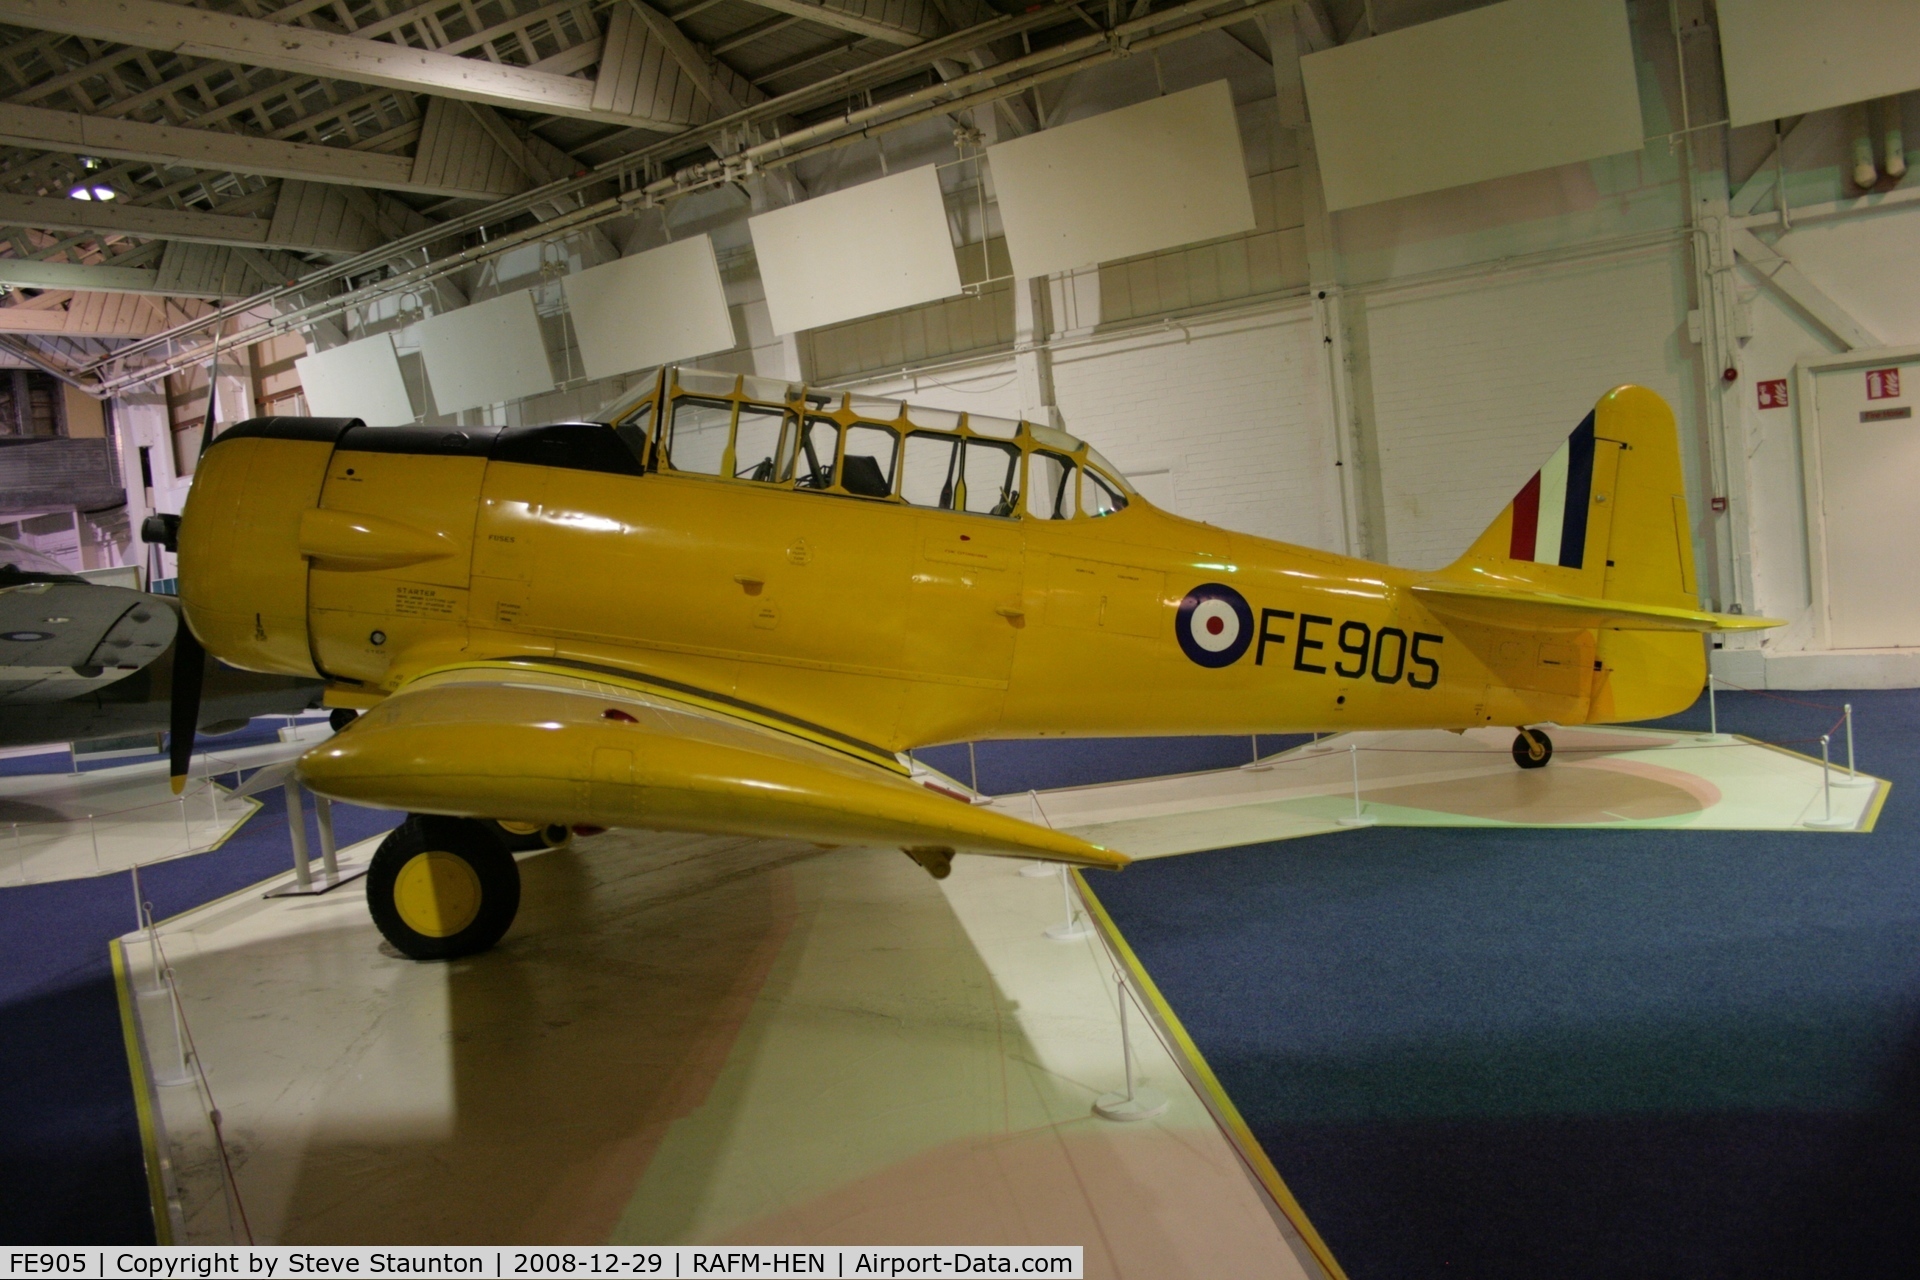 FE905, Noorduyn AT-16 Harvard IIB C/N 14-639, Taken at the RAF Museum, Hendon. December 2008